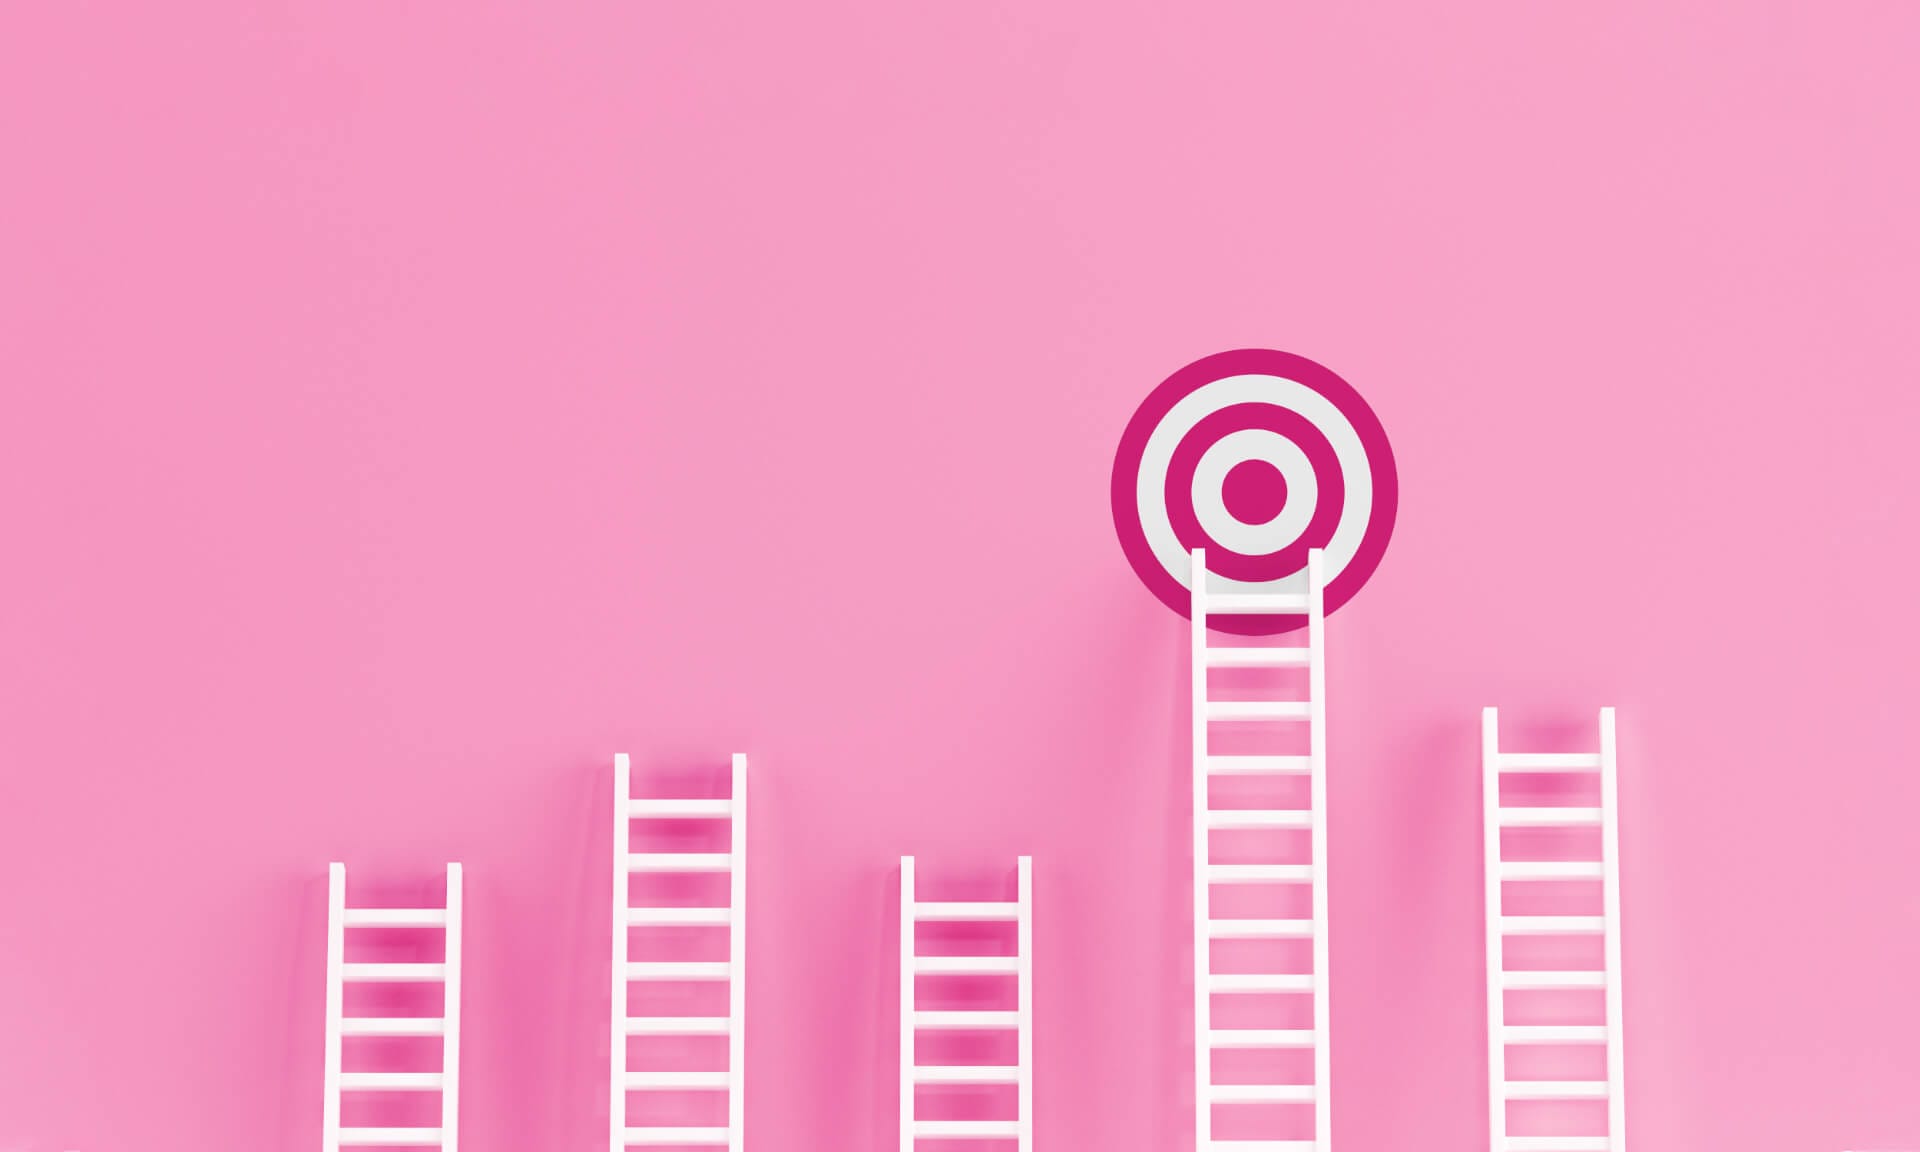 Eine Zielscheibe hängt an einer rosafarbenen Wand, die das Karriereziel symbolisiert. An dieser Wand sind fünf unterschiedlich große, weiße Leitern gelehnt, die Karriereleitern symbolisieren, aber nur eine Leiter führt zum Karriereziel.